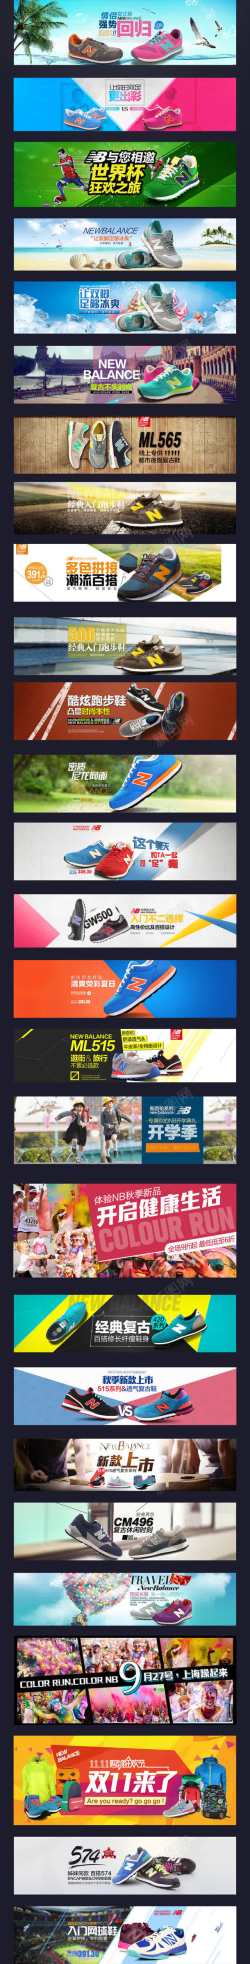 匹克运动鞋广告男女运动鞋广告海报高清图片